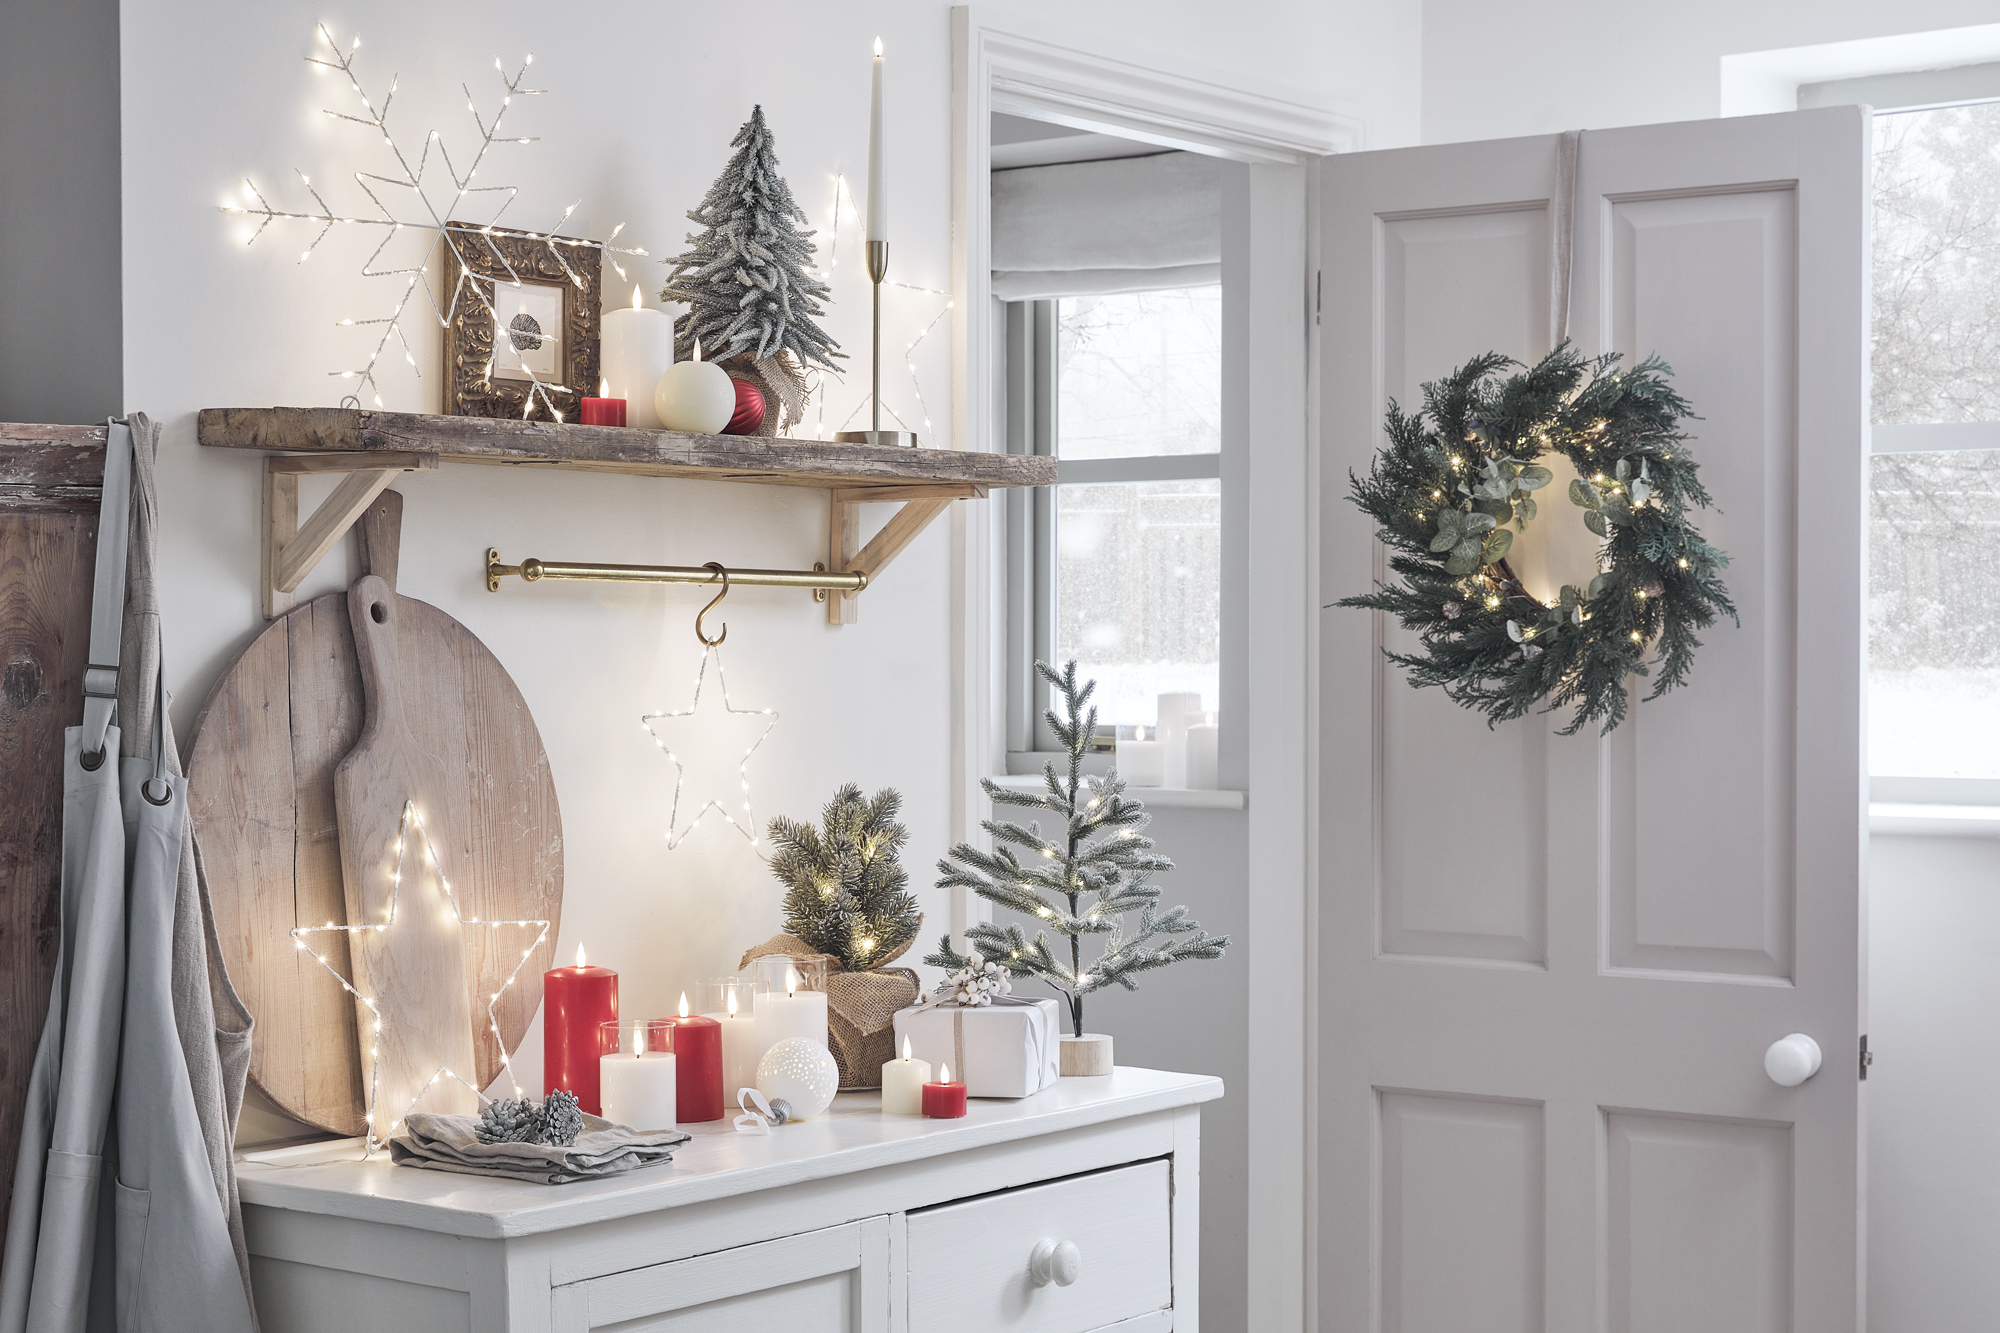 besparen op kerstdecoratie, tips voor goedkope kerstversiering